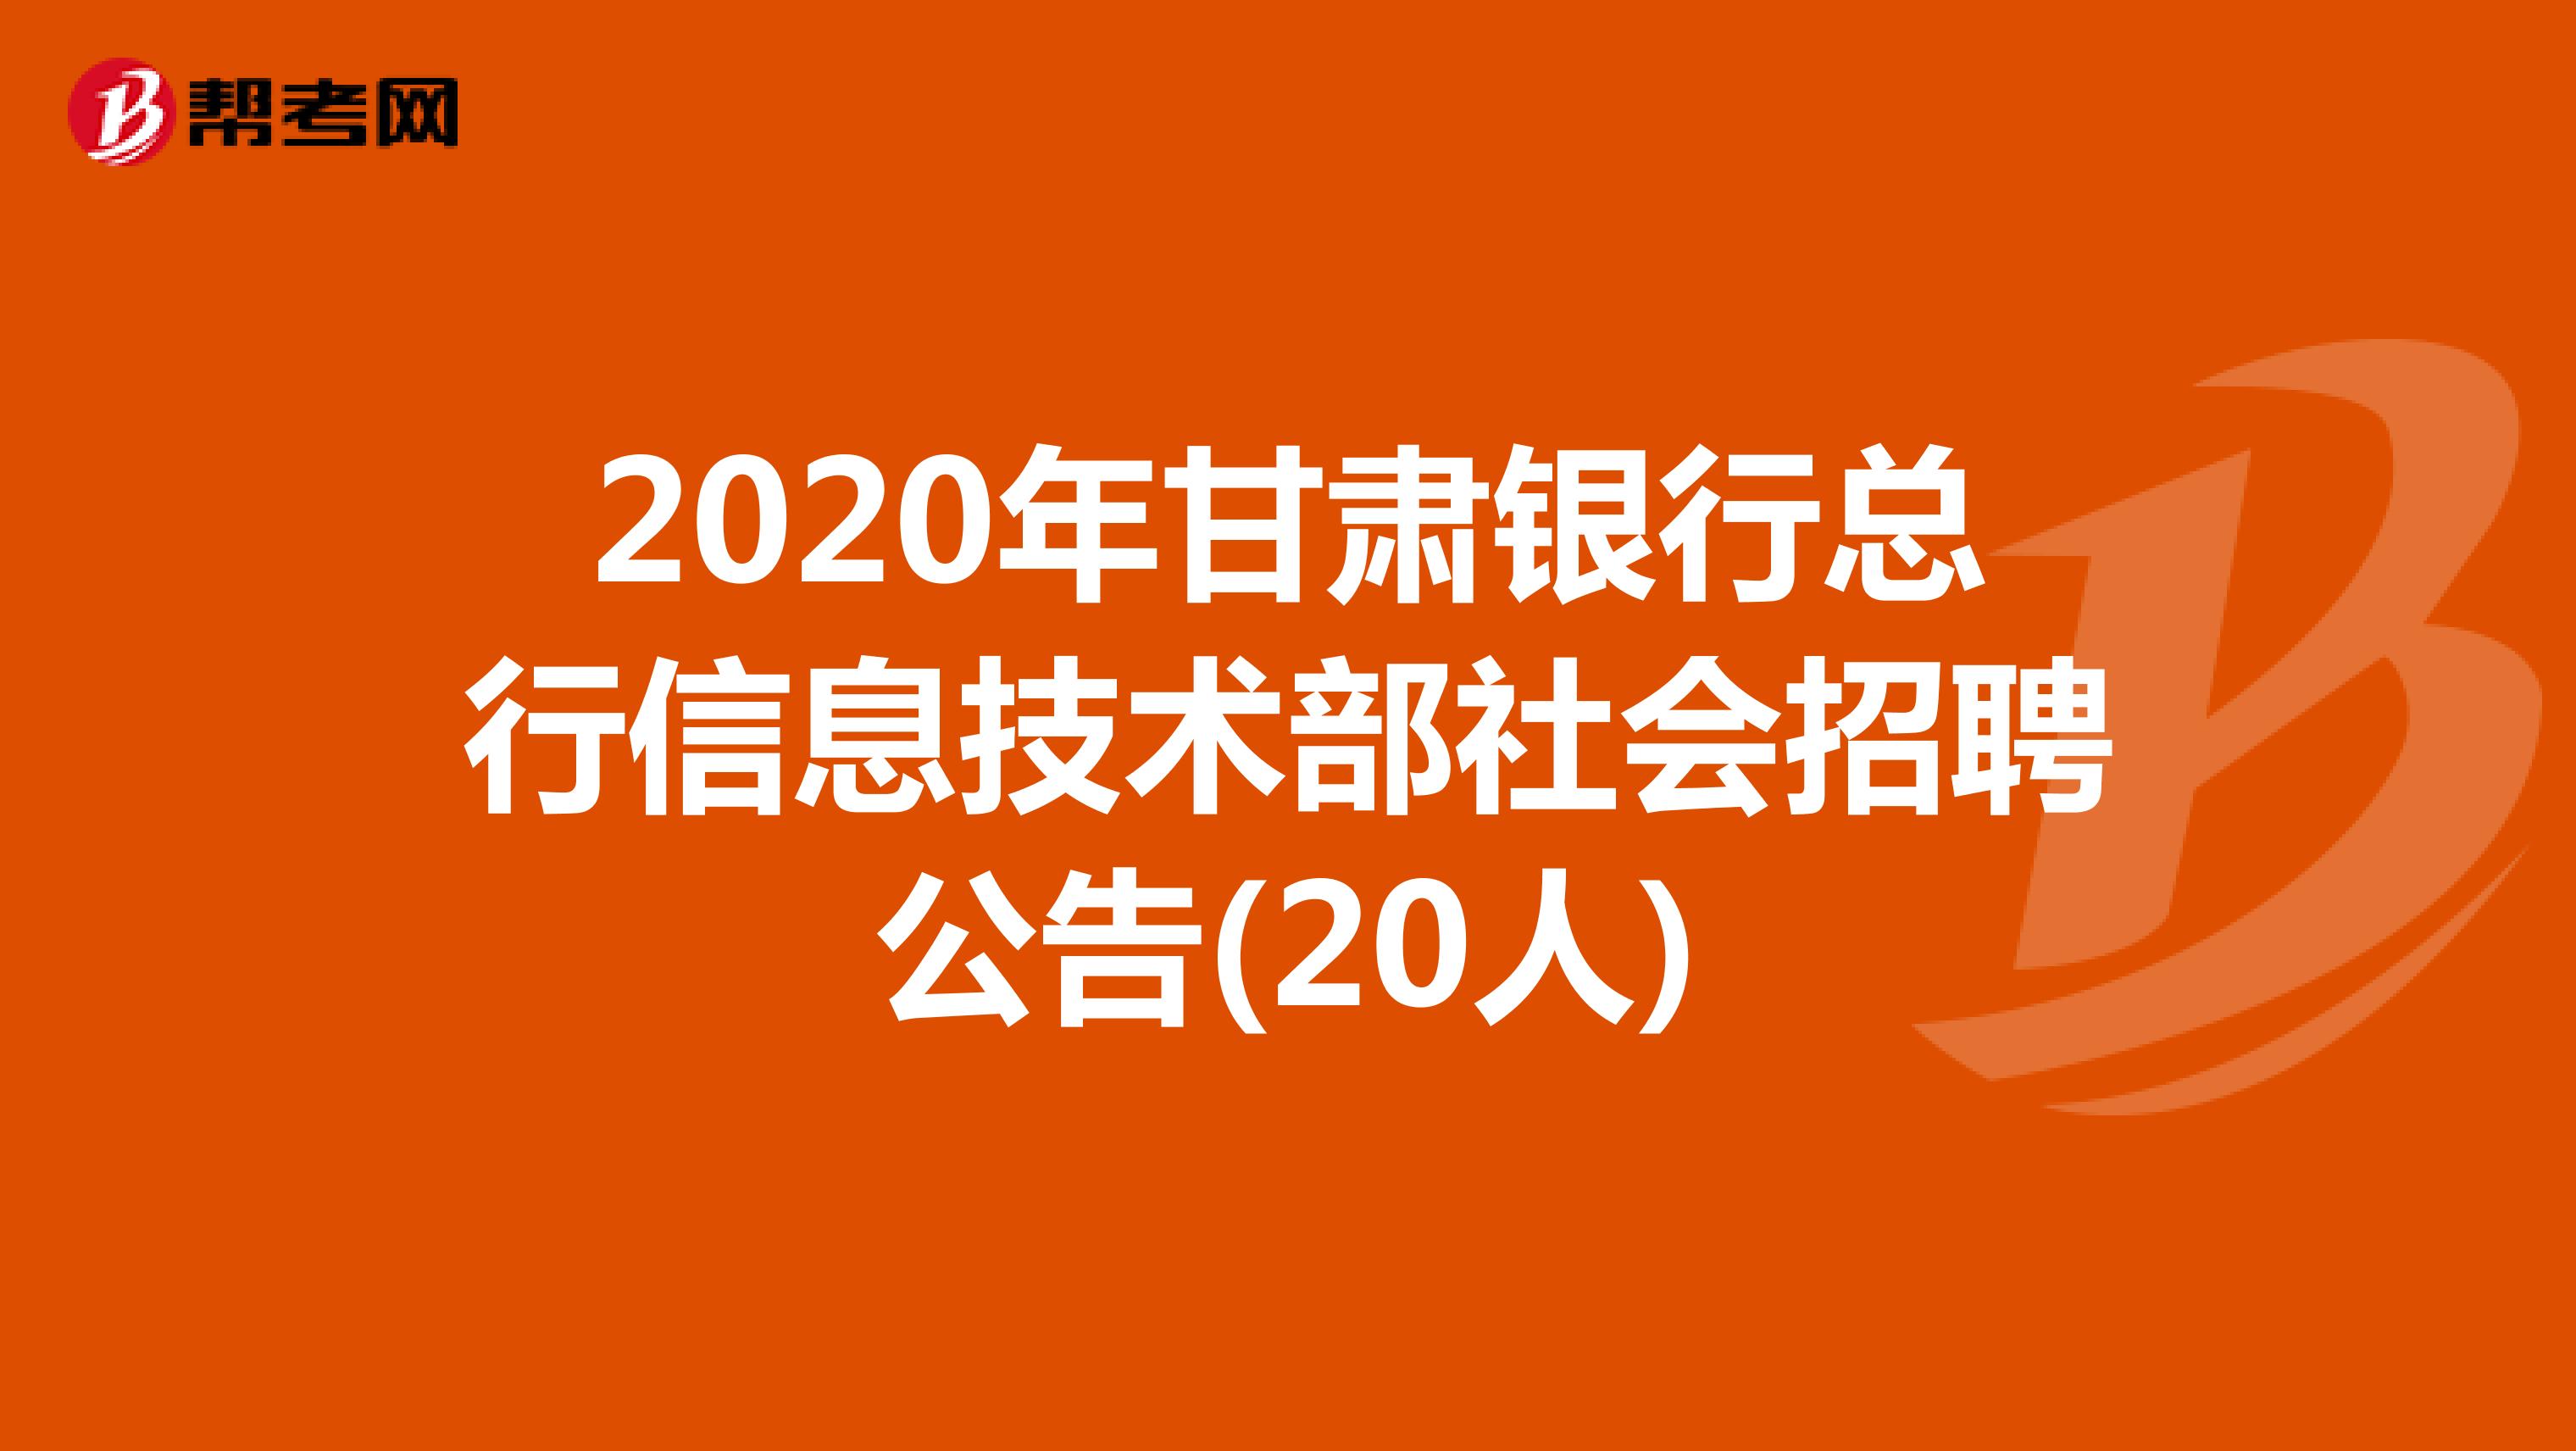 2020年甘肃银行总行信息技术部社会招聘公告(20人)